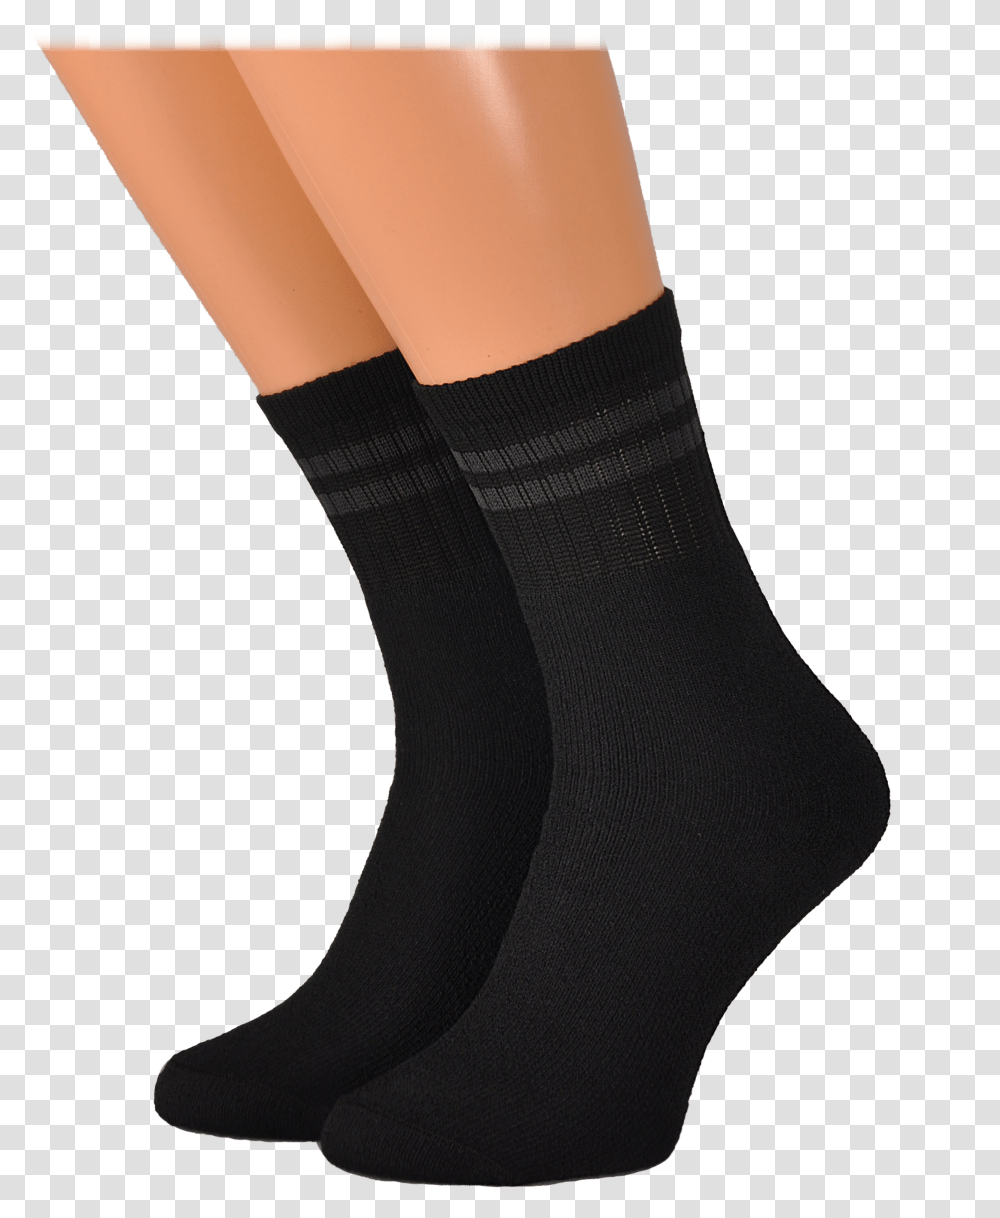 Download Black Socks Image For Free Black Socks, Clothing, Apparel, Footwear, Shoe Transparent Png